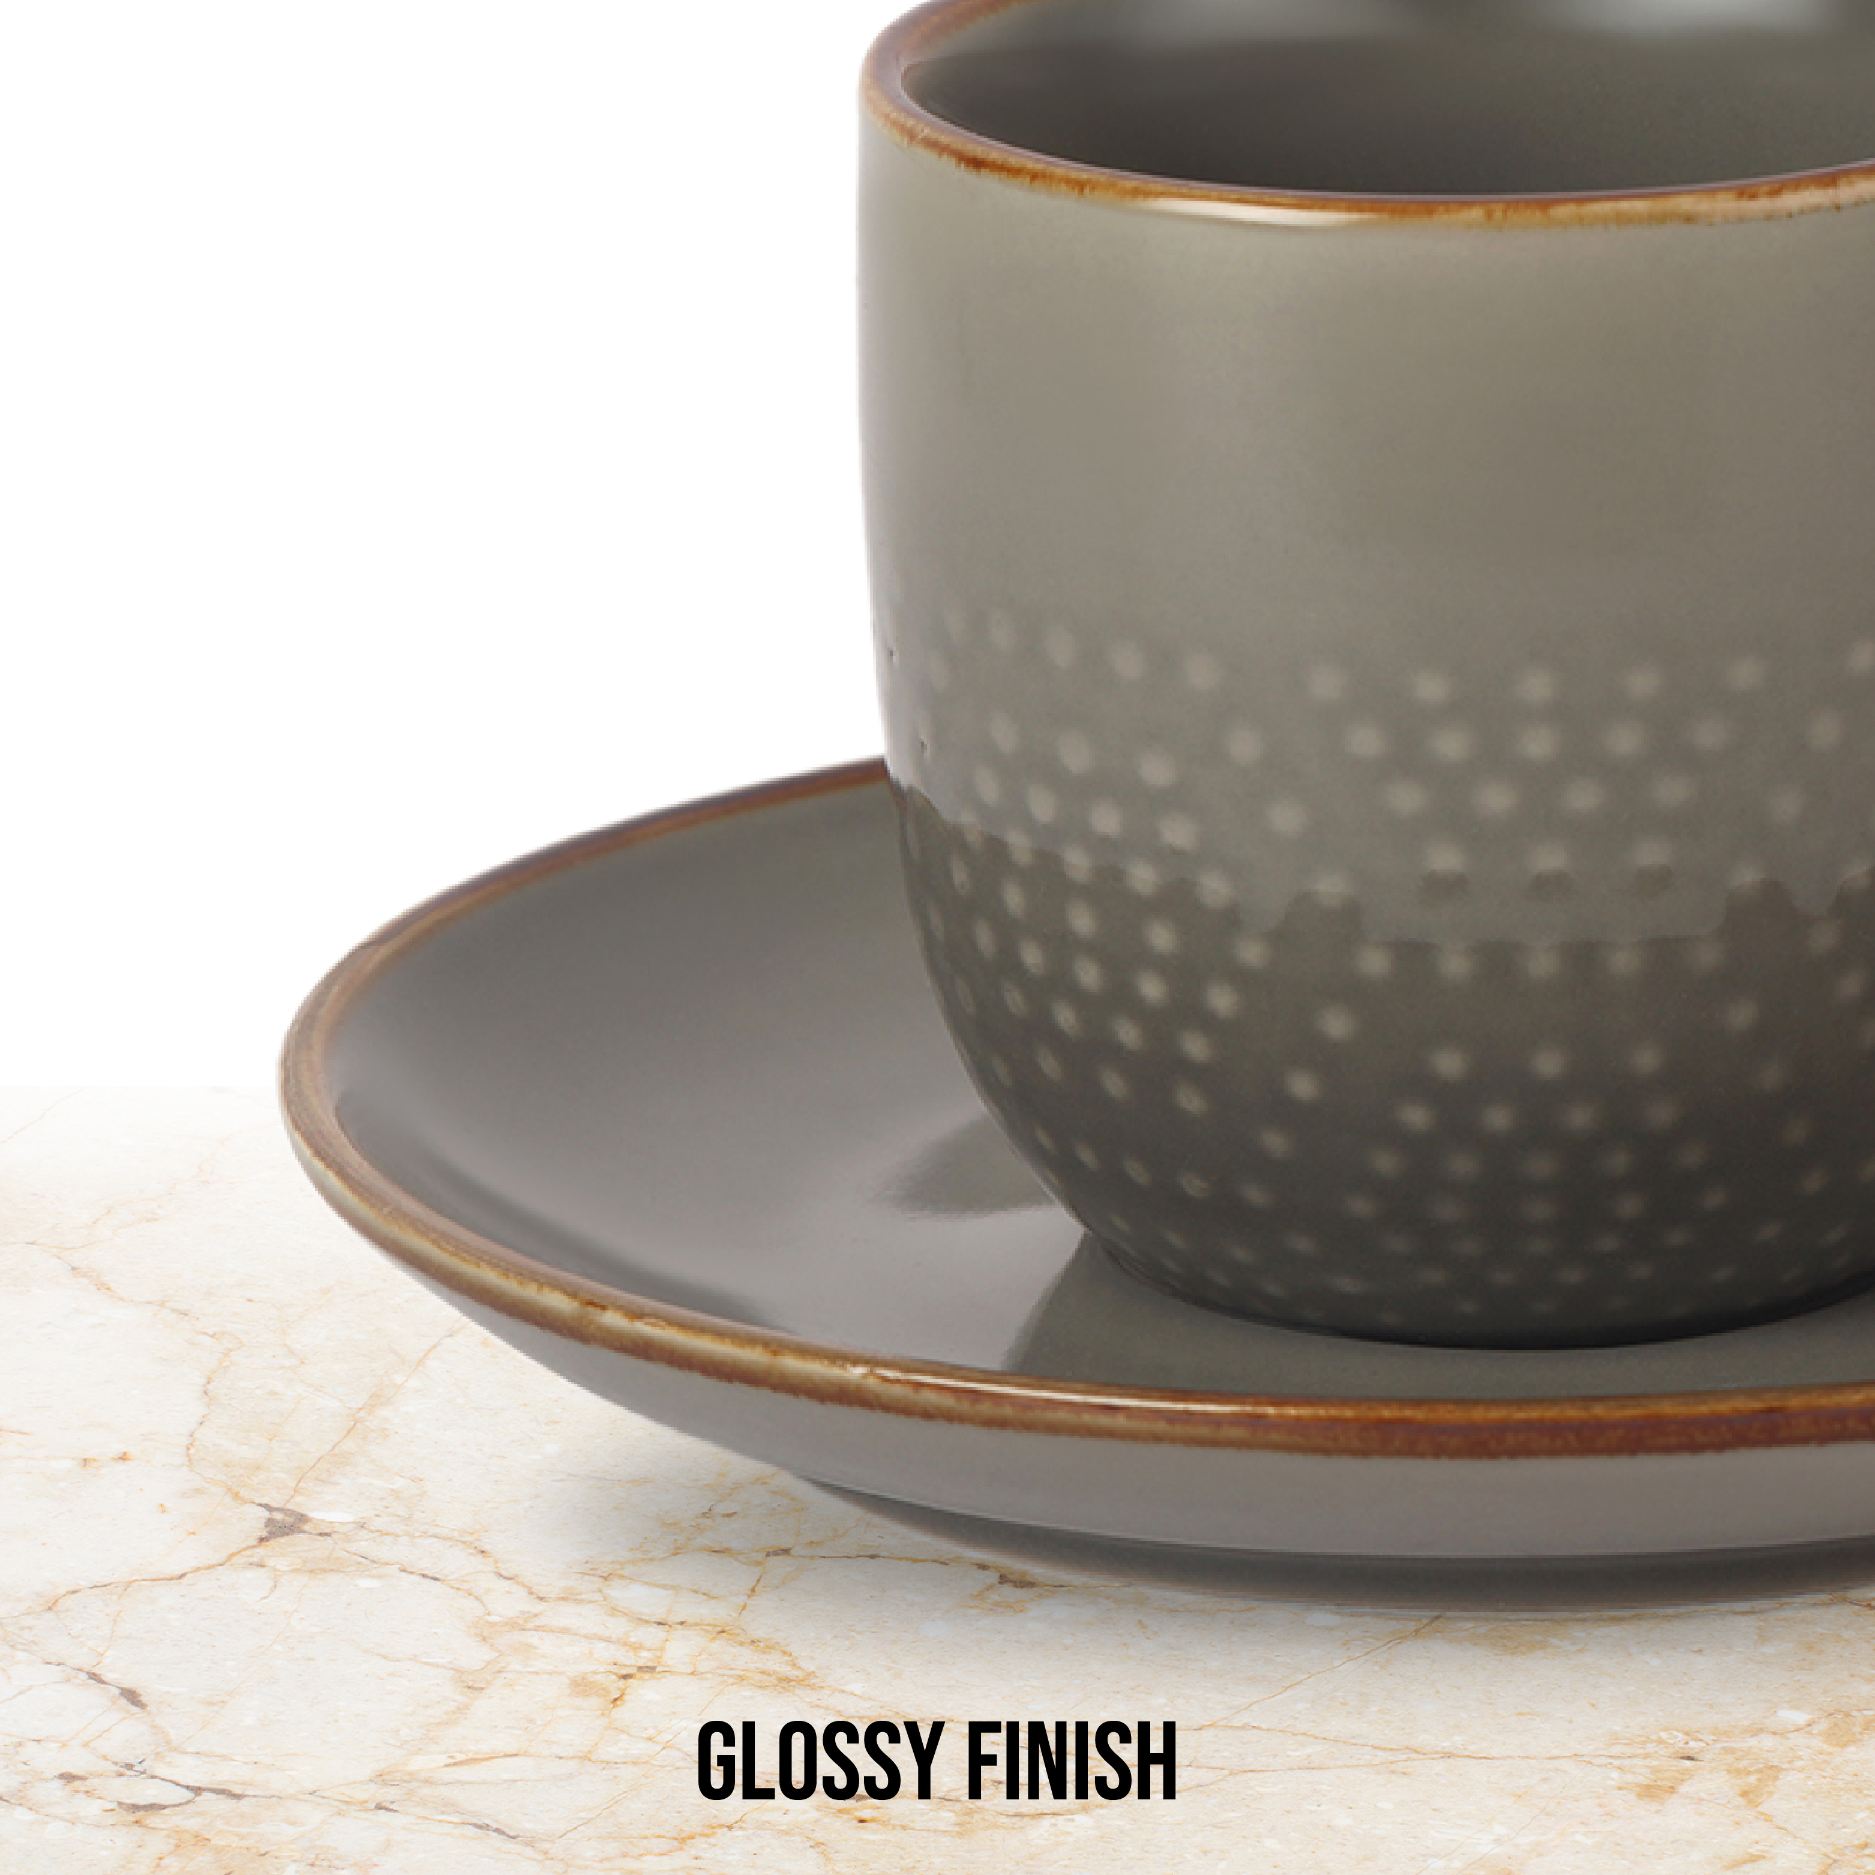 Hampshire 6 Pieces Ceramic Cup & Saucer Regular / 6 Pieces / Grey